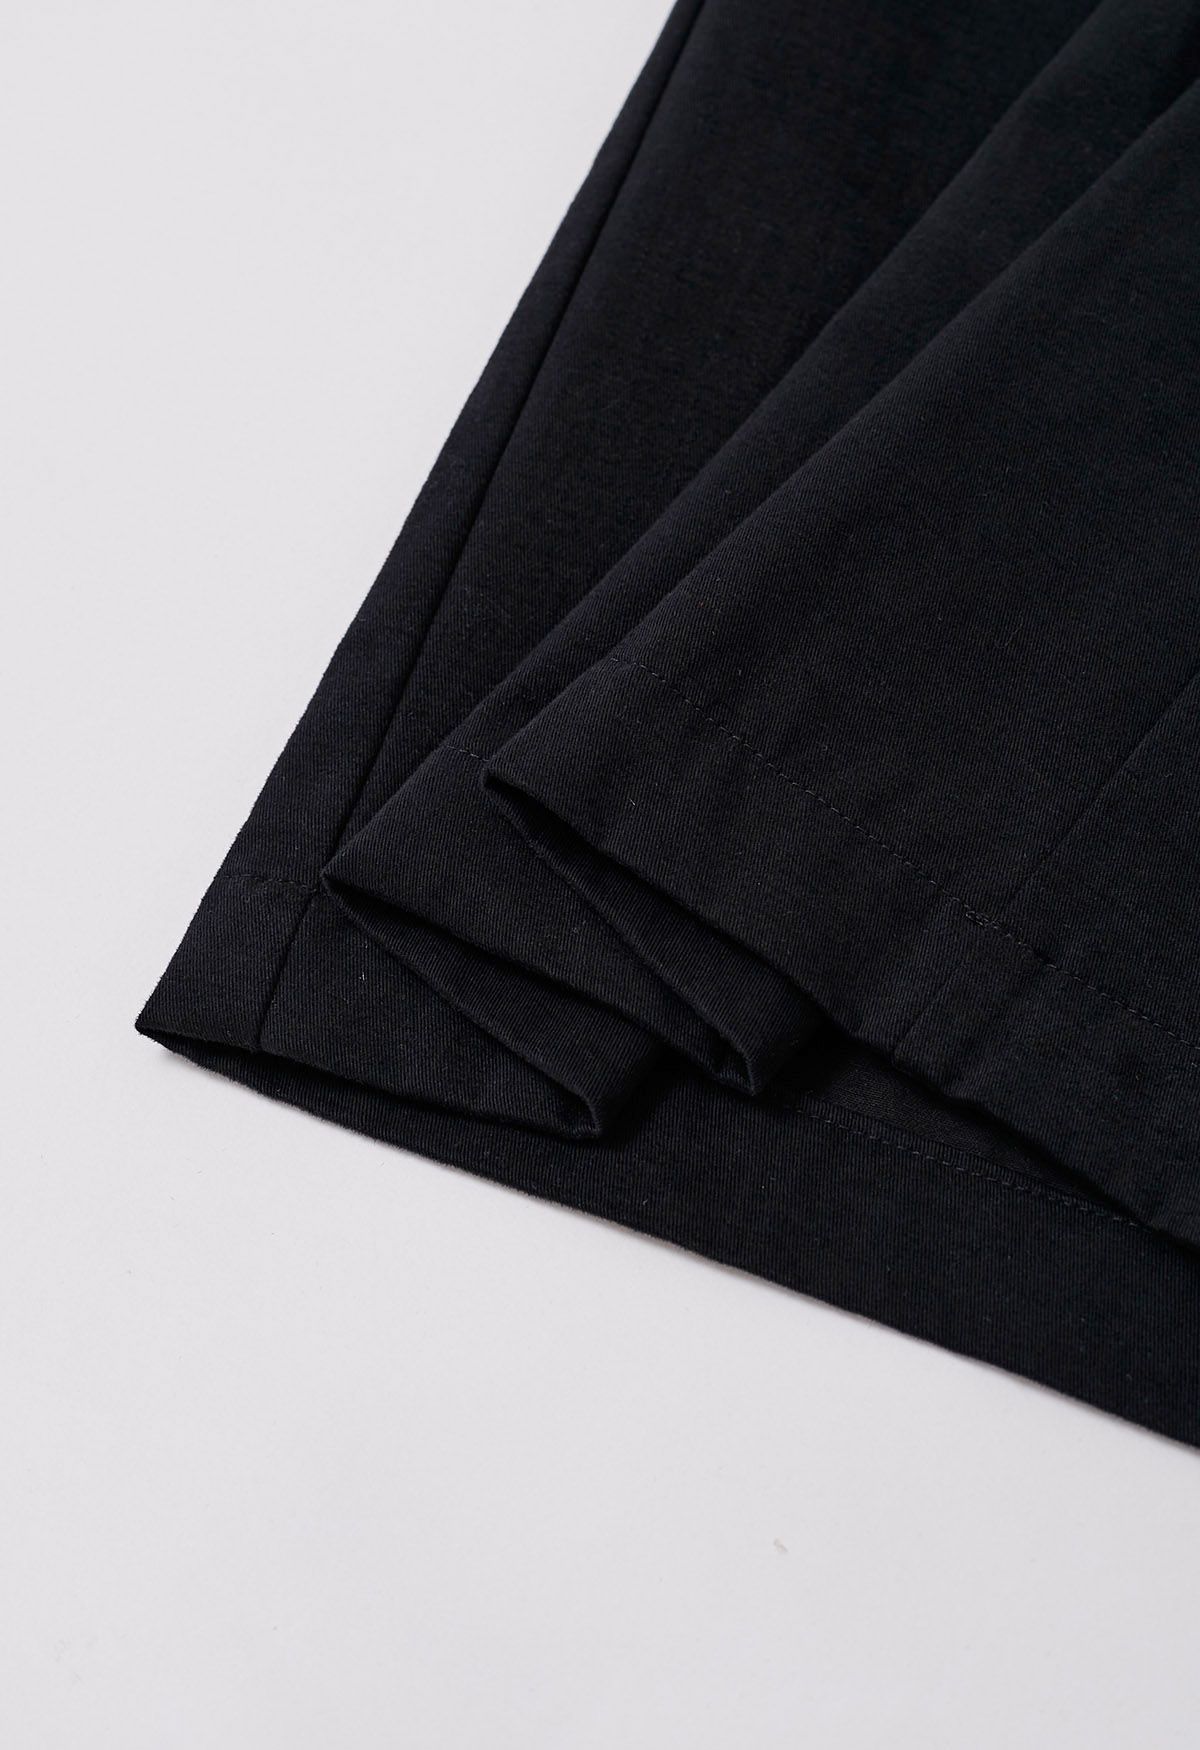 Cómodos pantalones anchos de algodón en negro